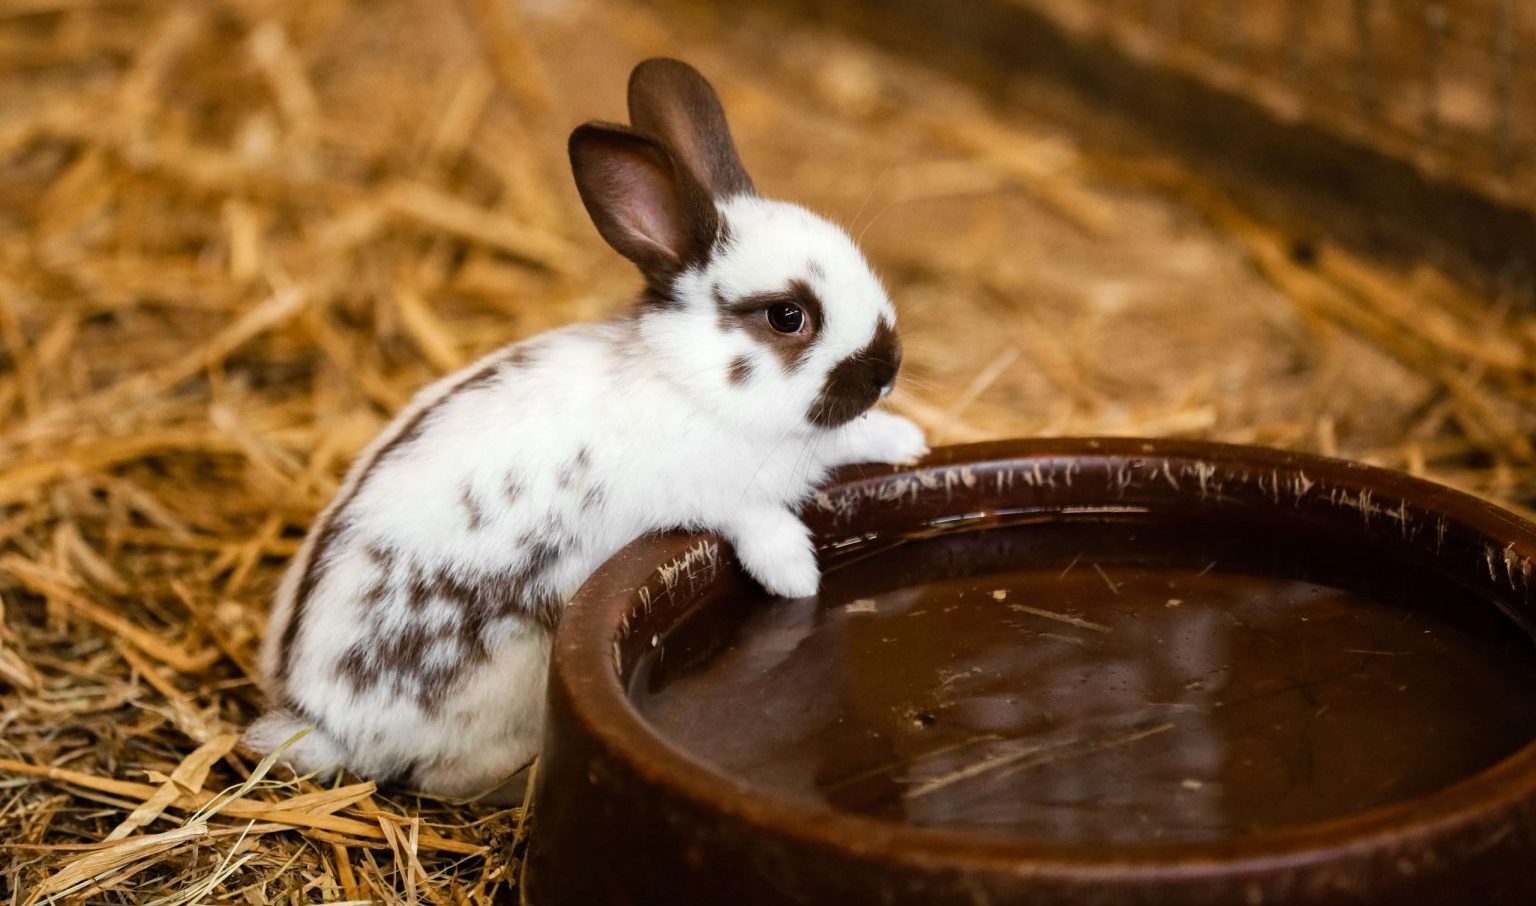 Le petit lapin blanc sur le foin essaye d'atteindre son grand bol d'eau fraîche